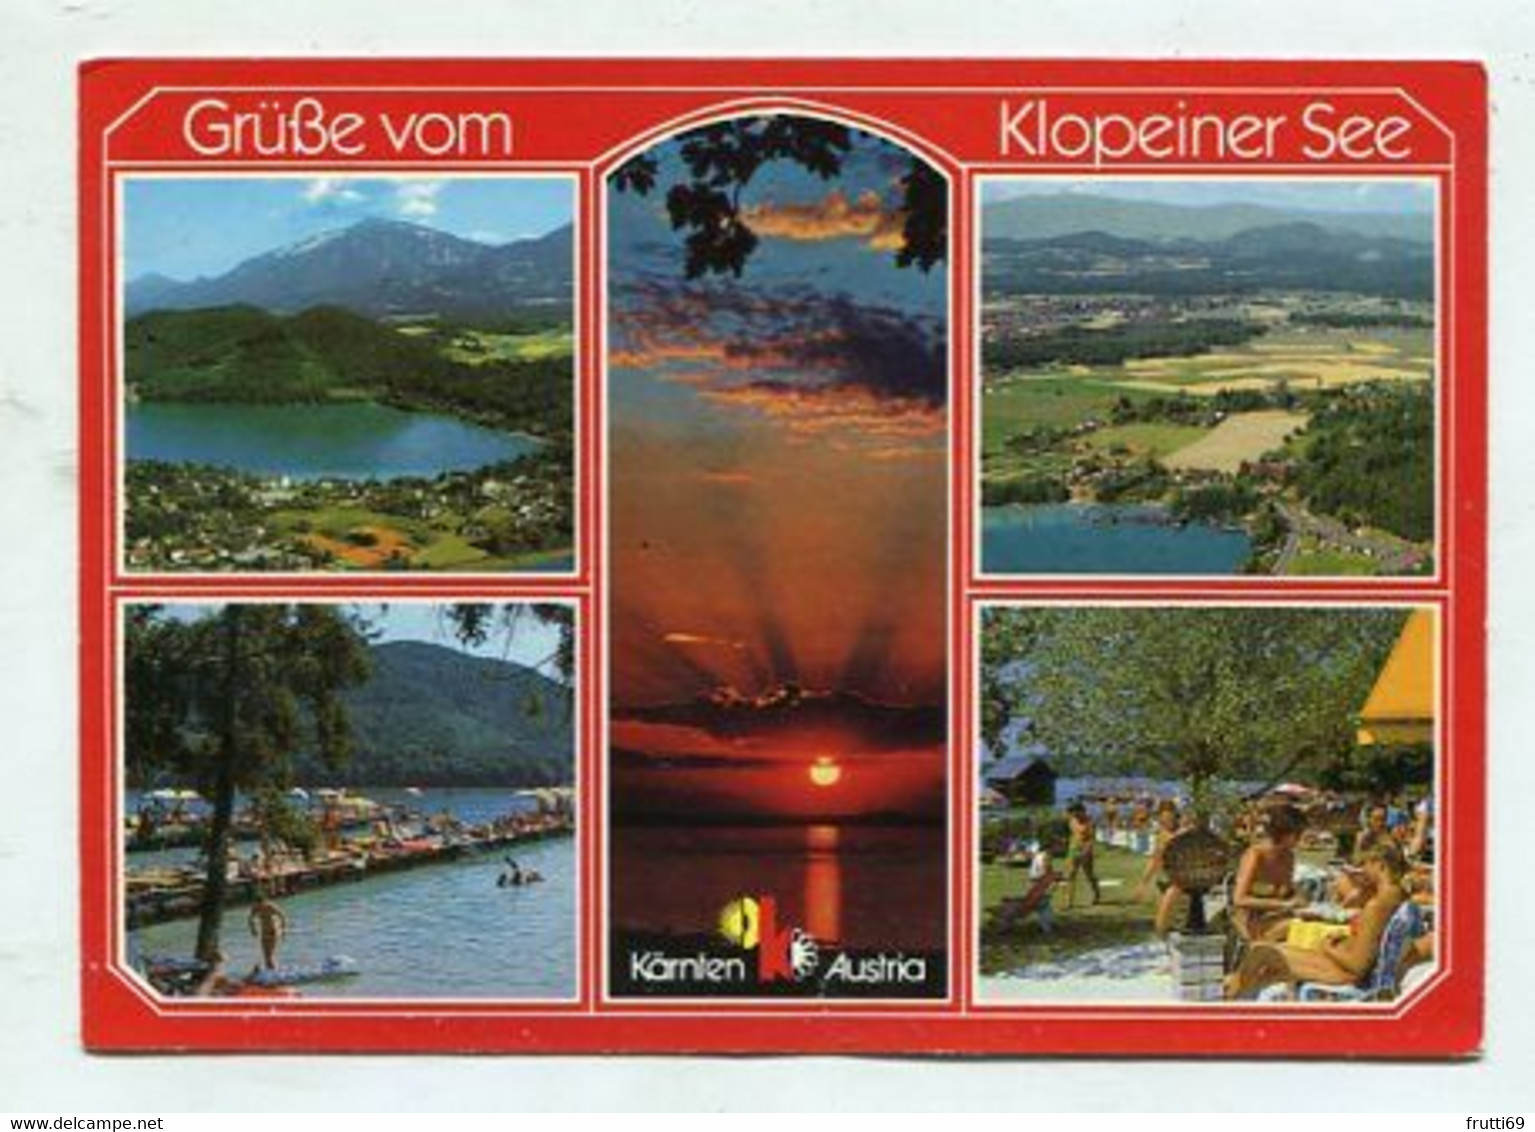 AK 103857 AUSTRIA - Klopeiner See - Klopeinersee-Orte